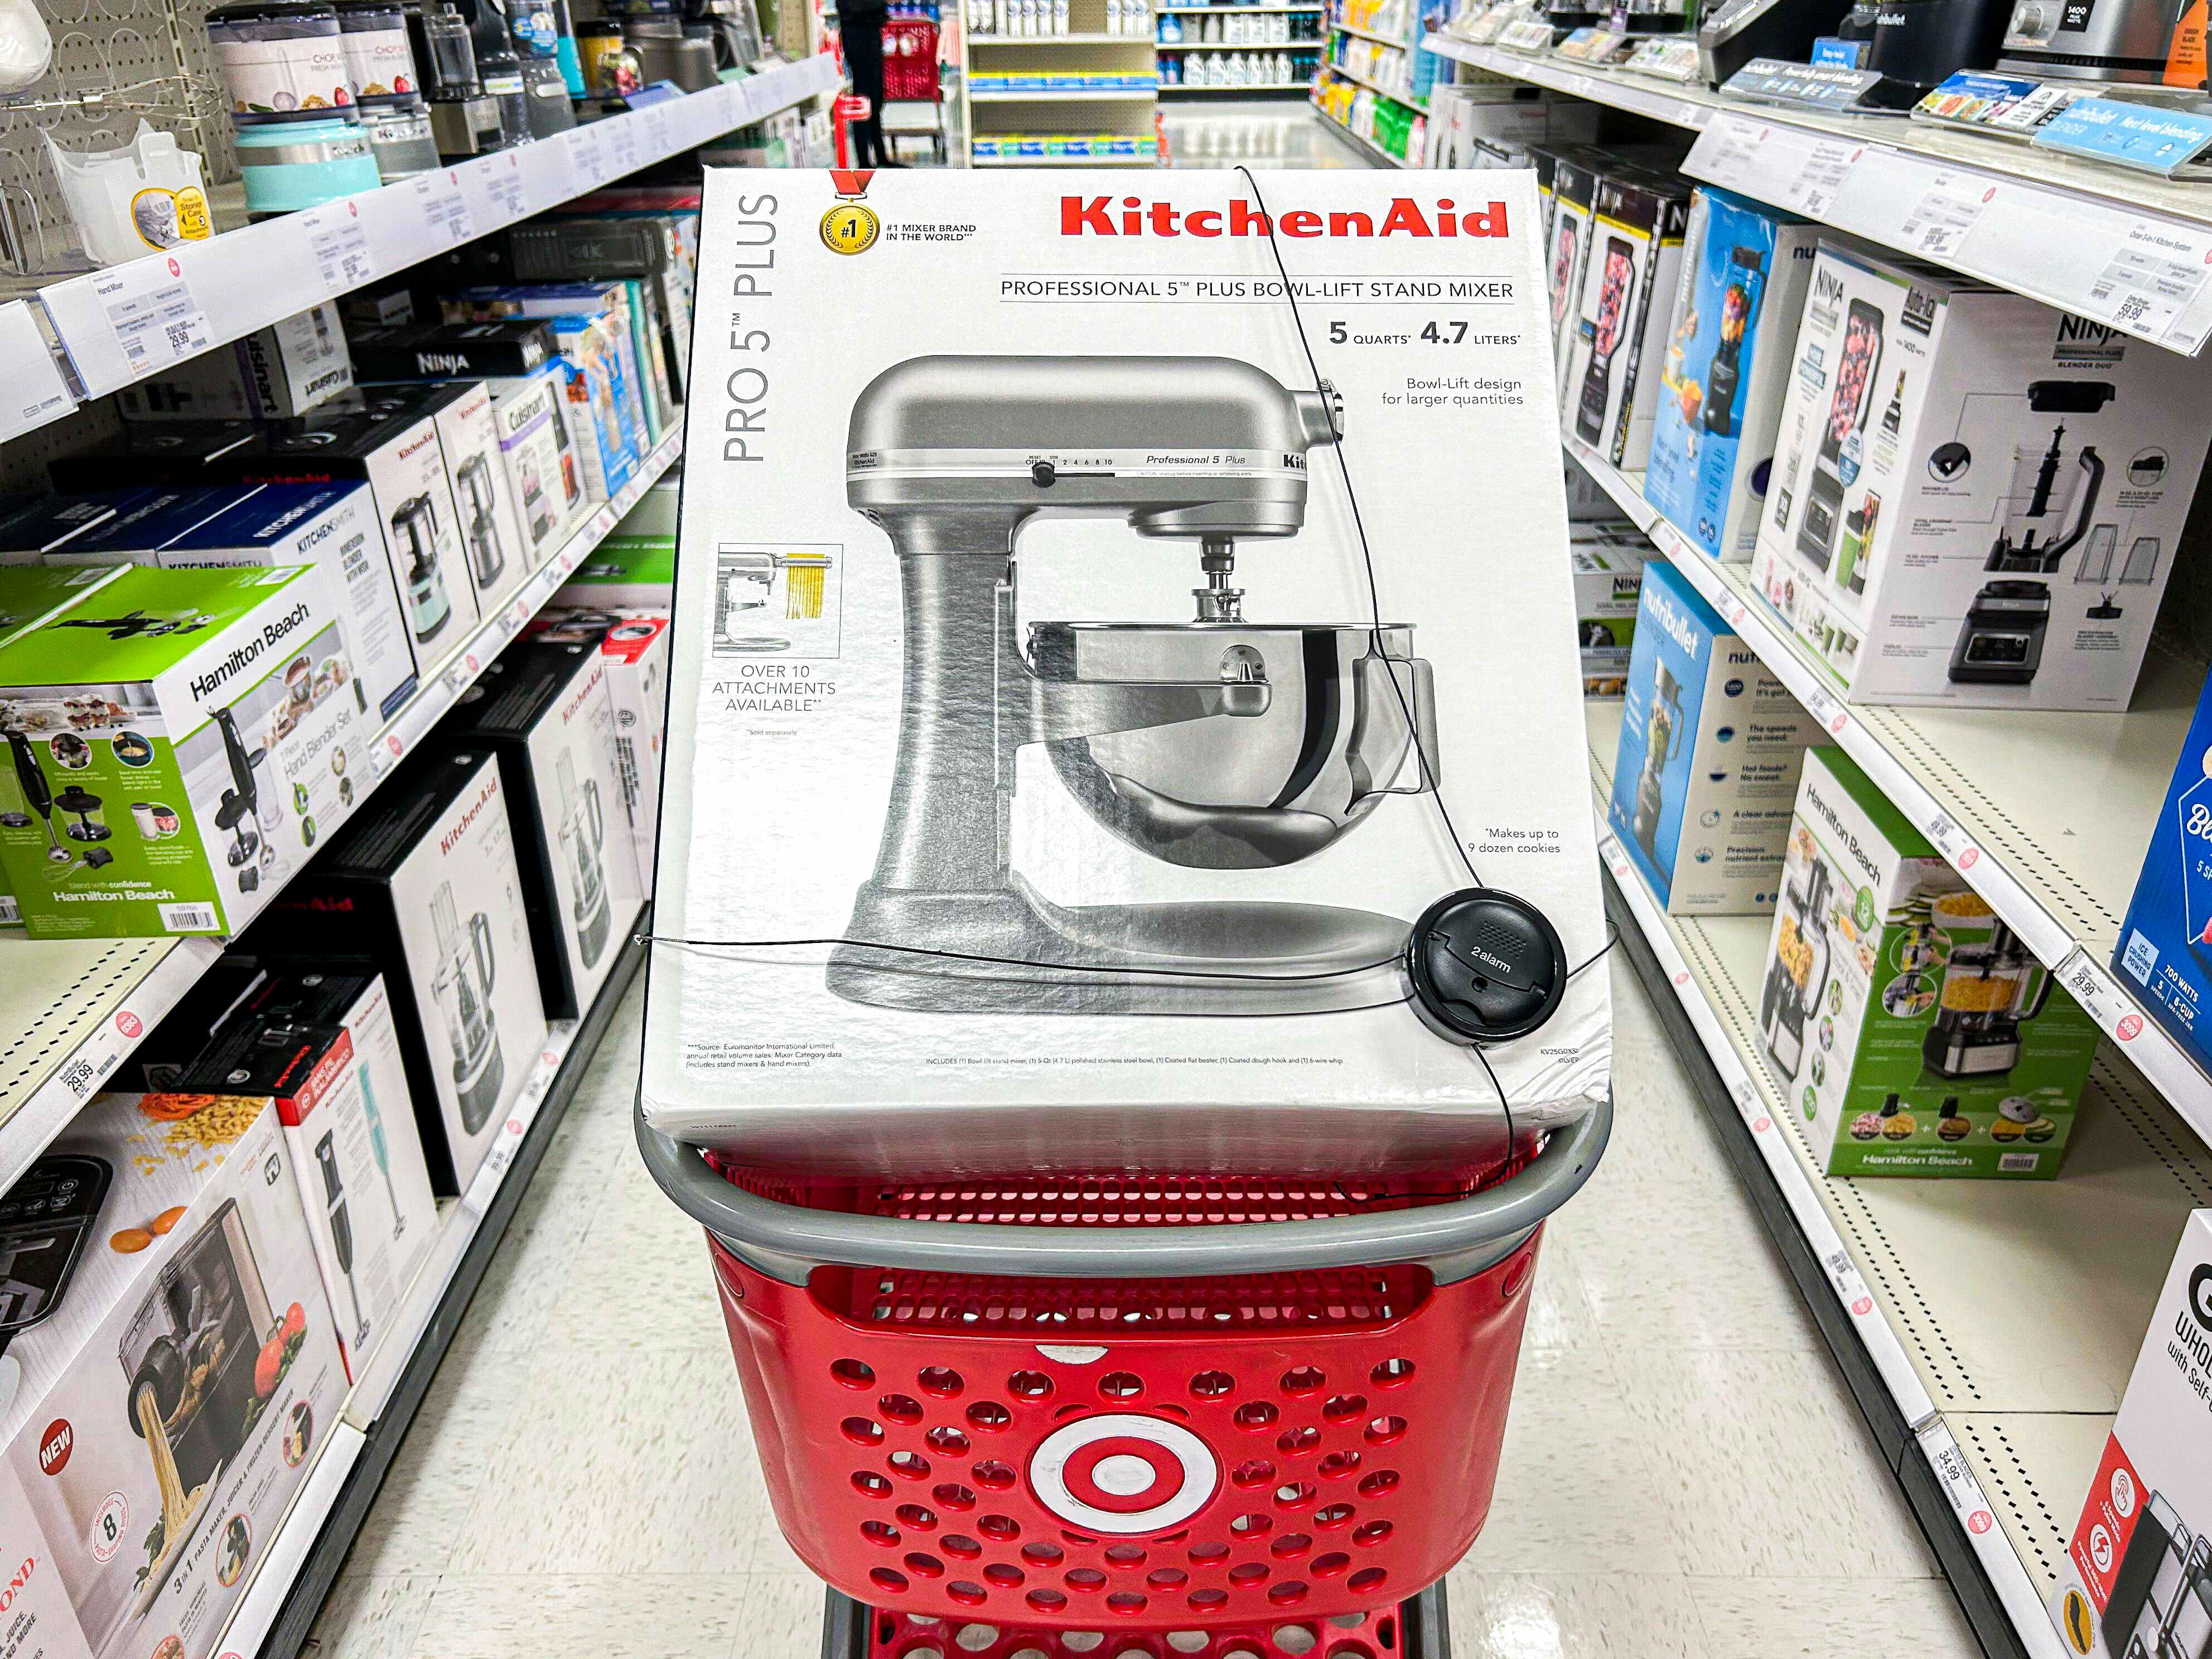 box of KitchenAid mixer in a shopping cart at Target